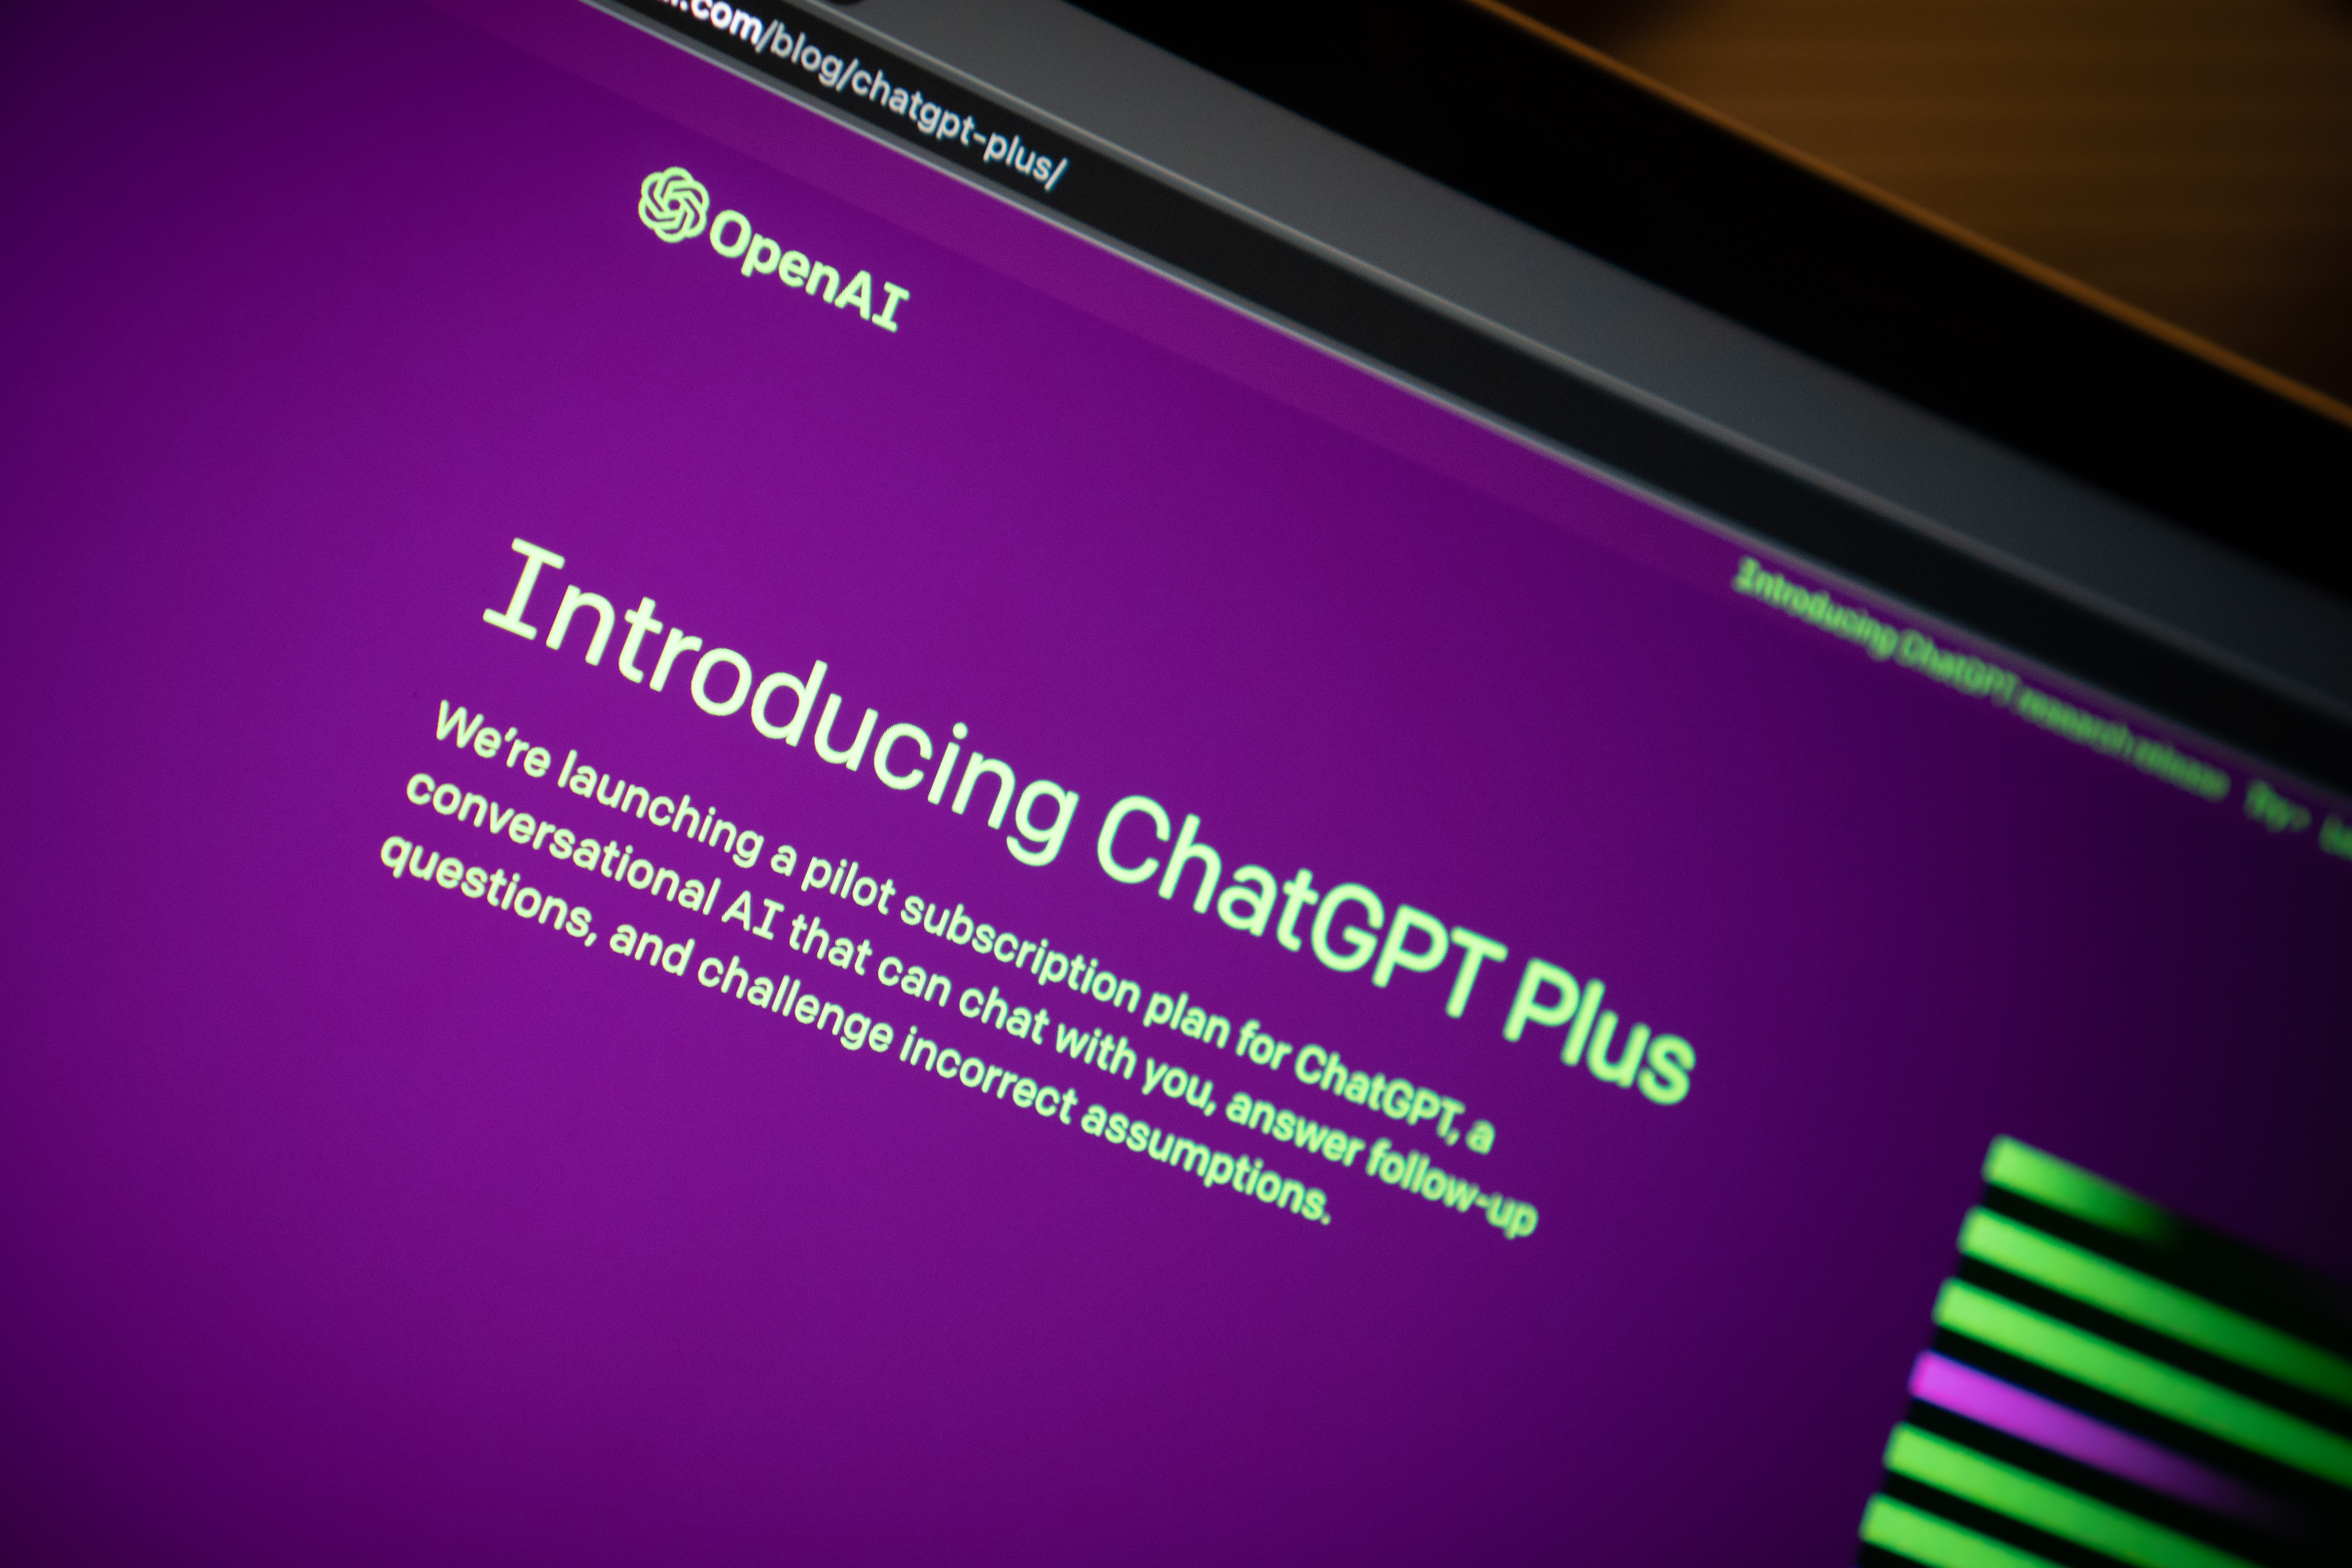 OpenAI zawiesiło rejestrację do ChatGPT Plus z powodu wysokiego popytu